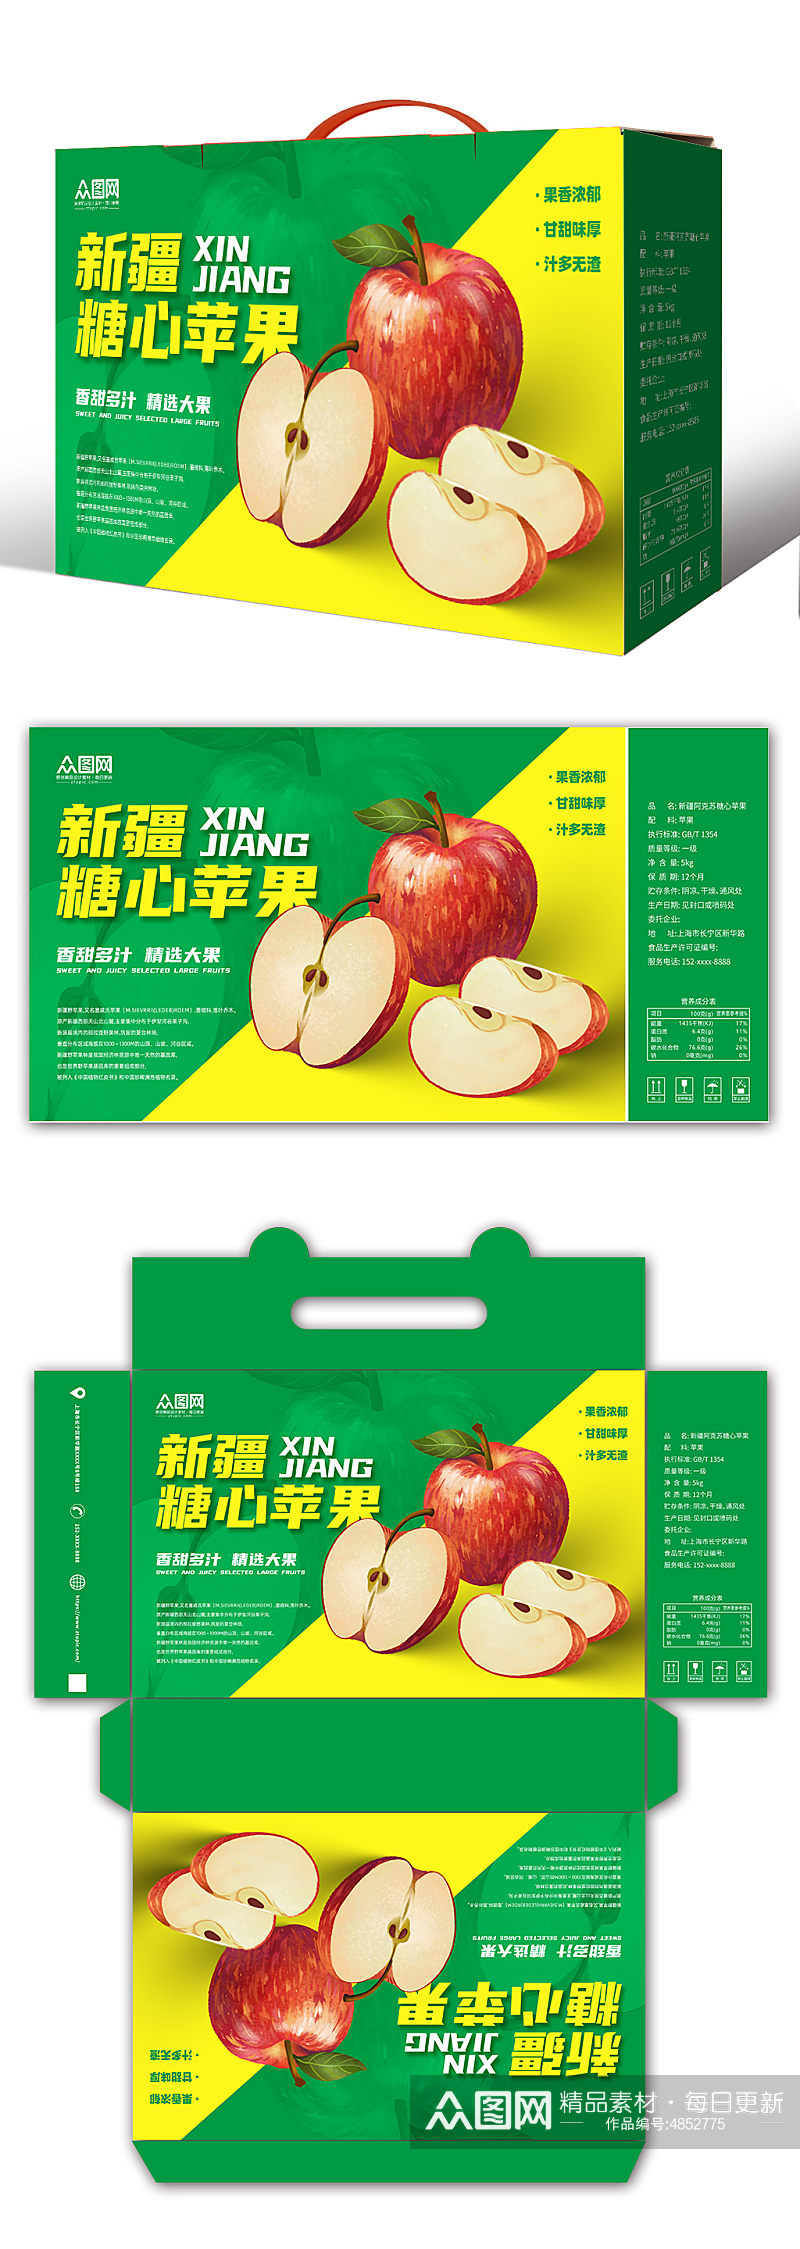 新疆糖心苹果水果鲜果包装礼盒设计素材